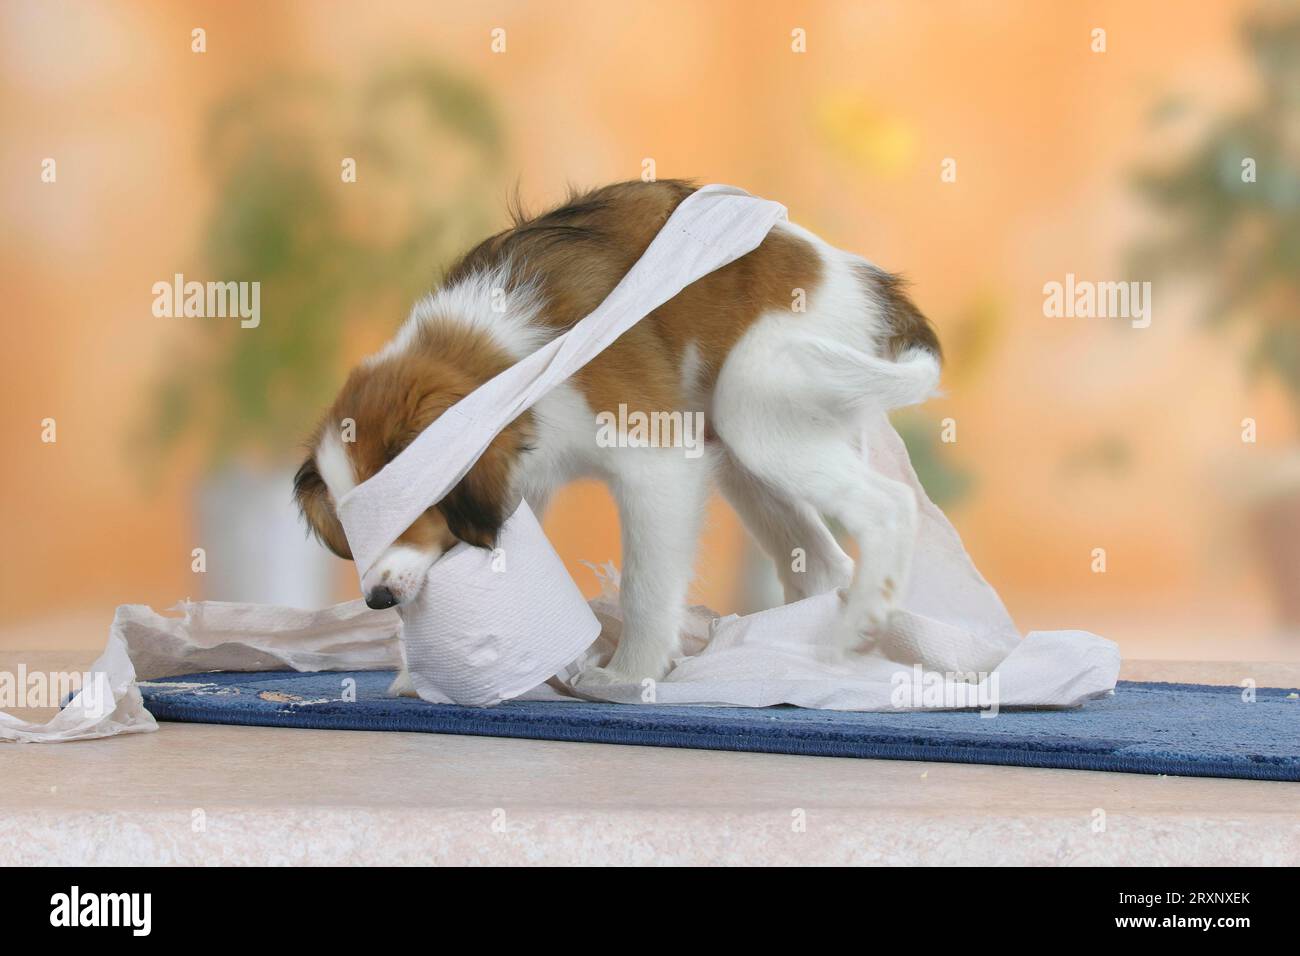 Petit chien hollandais de sauvagine, chiot, 3 mois, jouant avec un rouleau de papier toilette, Kooikerhondje Banque D'Images